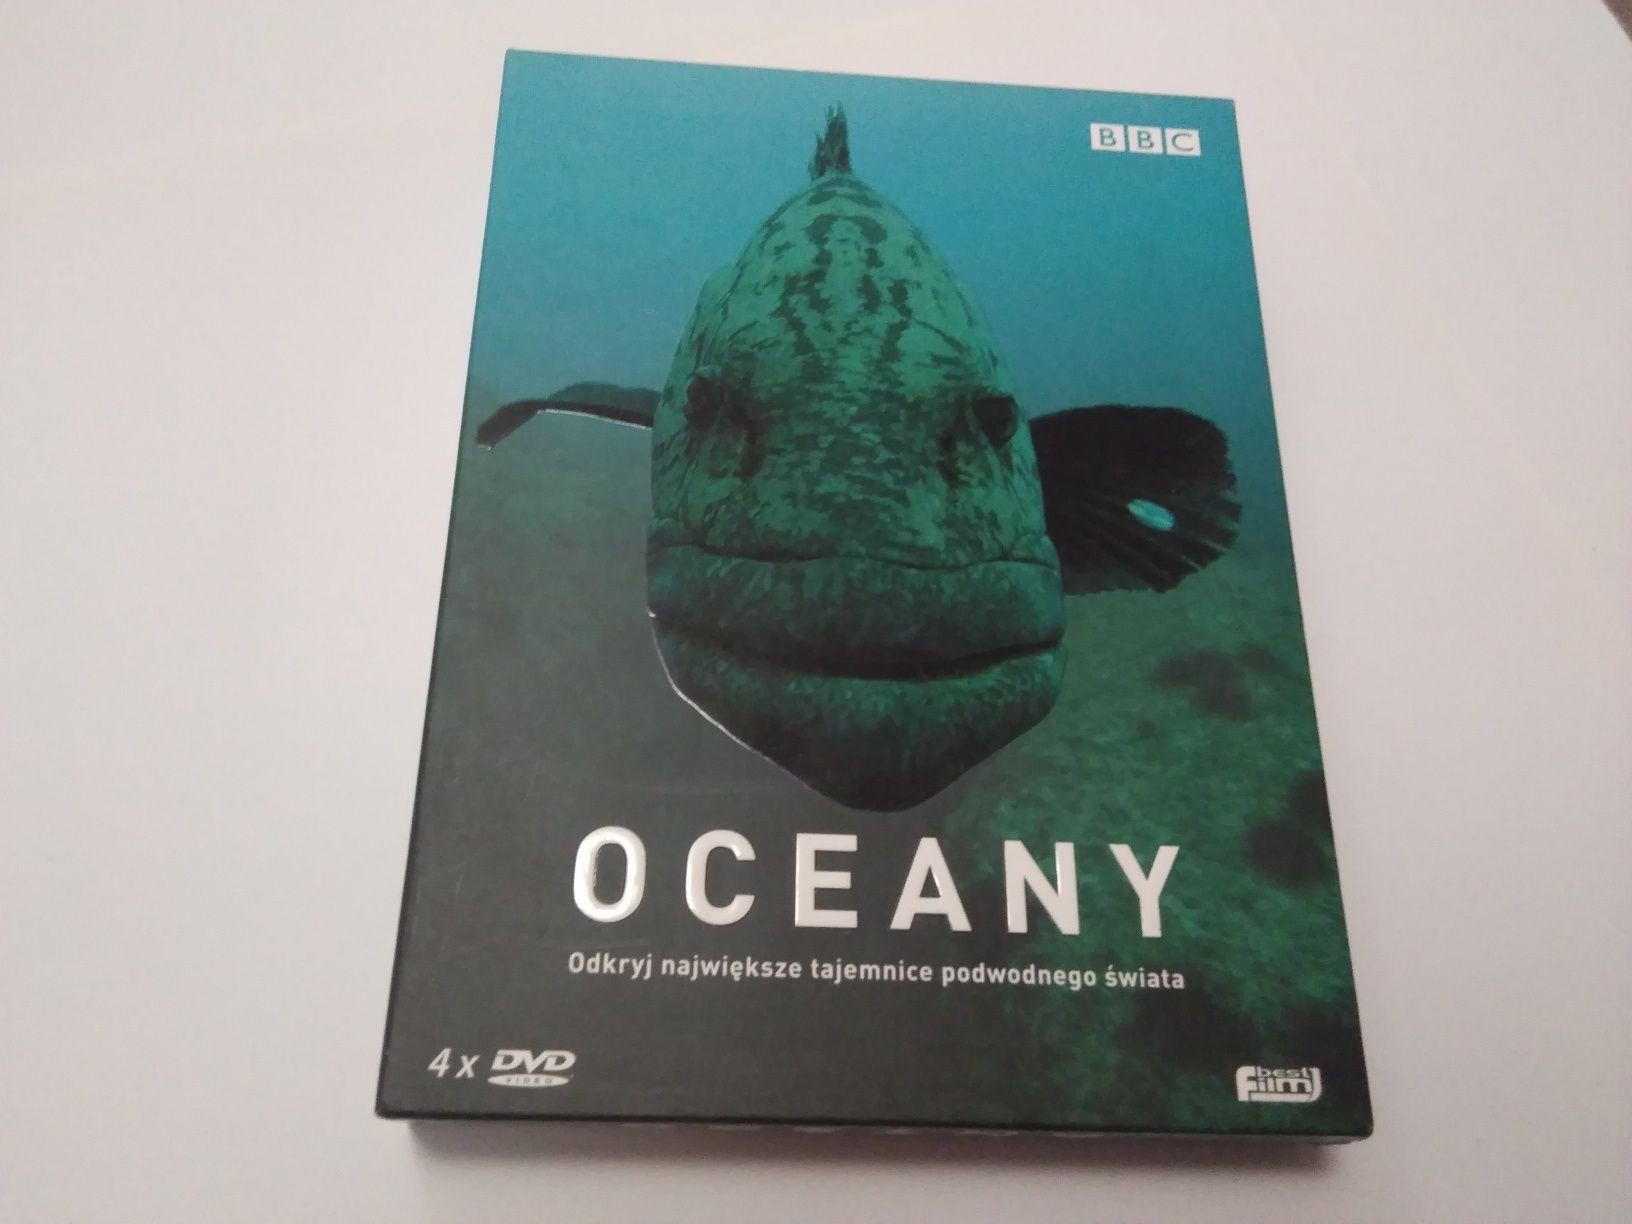 Oceany seria BBC